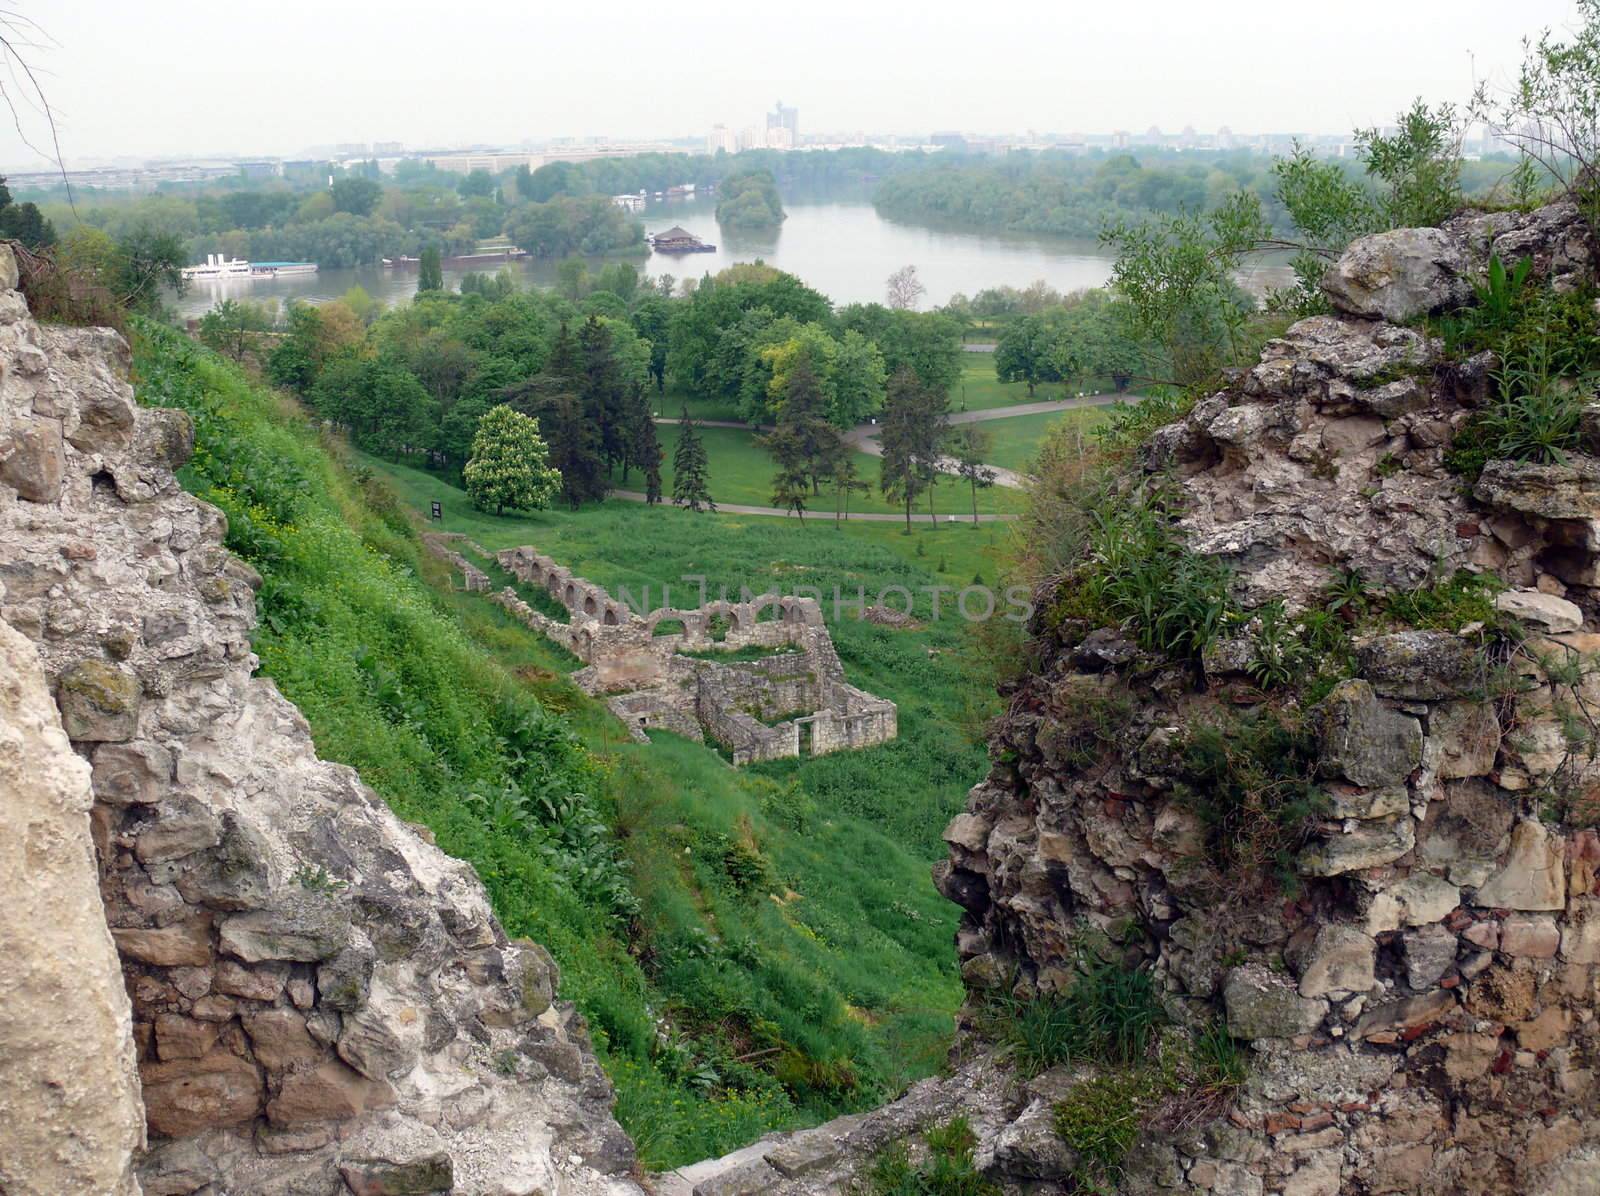 Fortress Kalemegdan in Belgrade, Serbia by Stoyanov